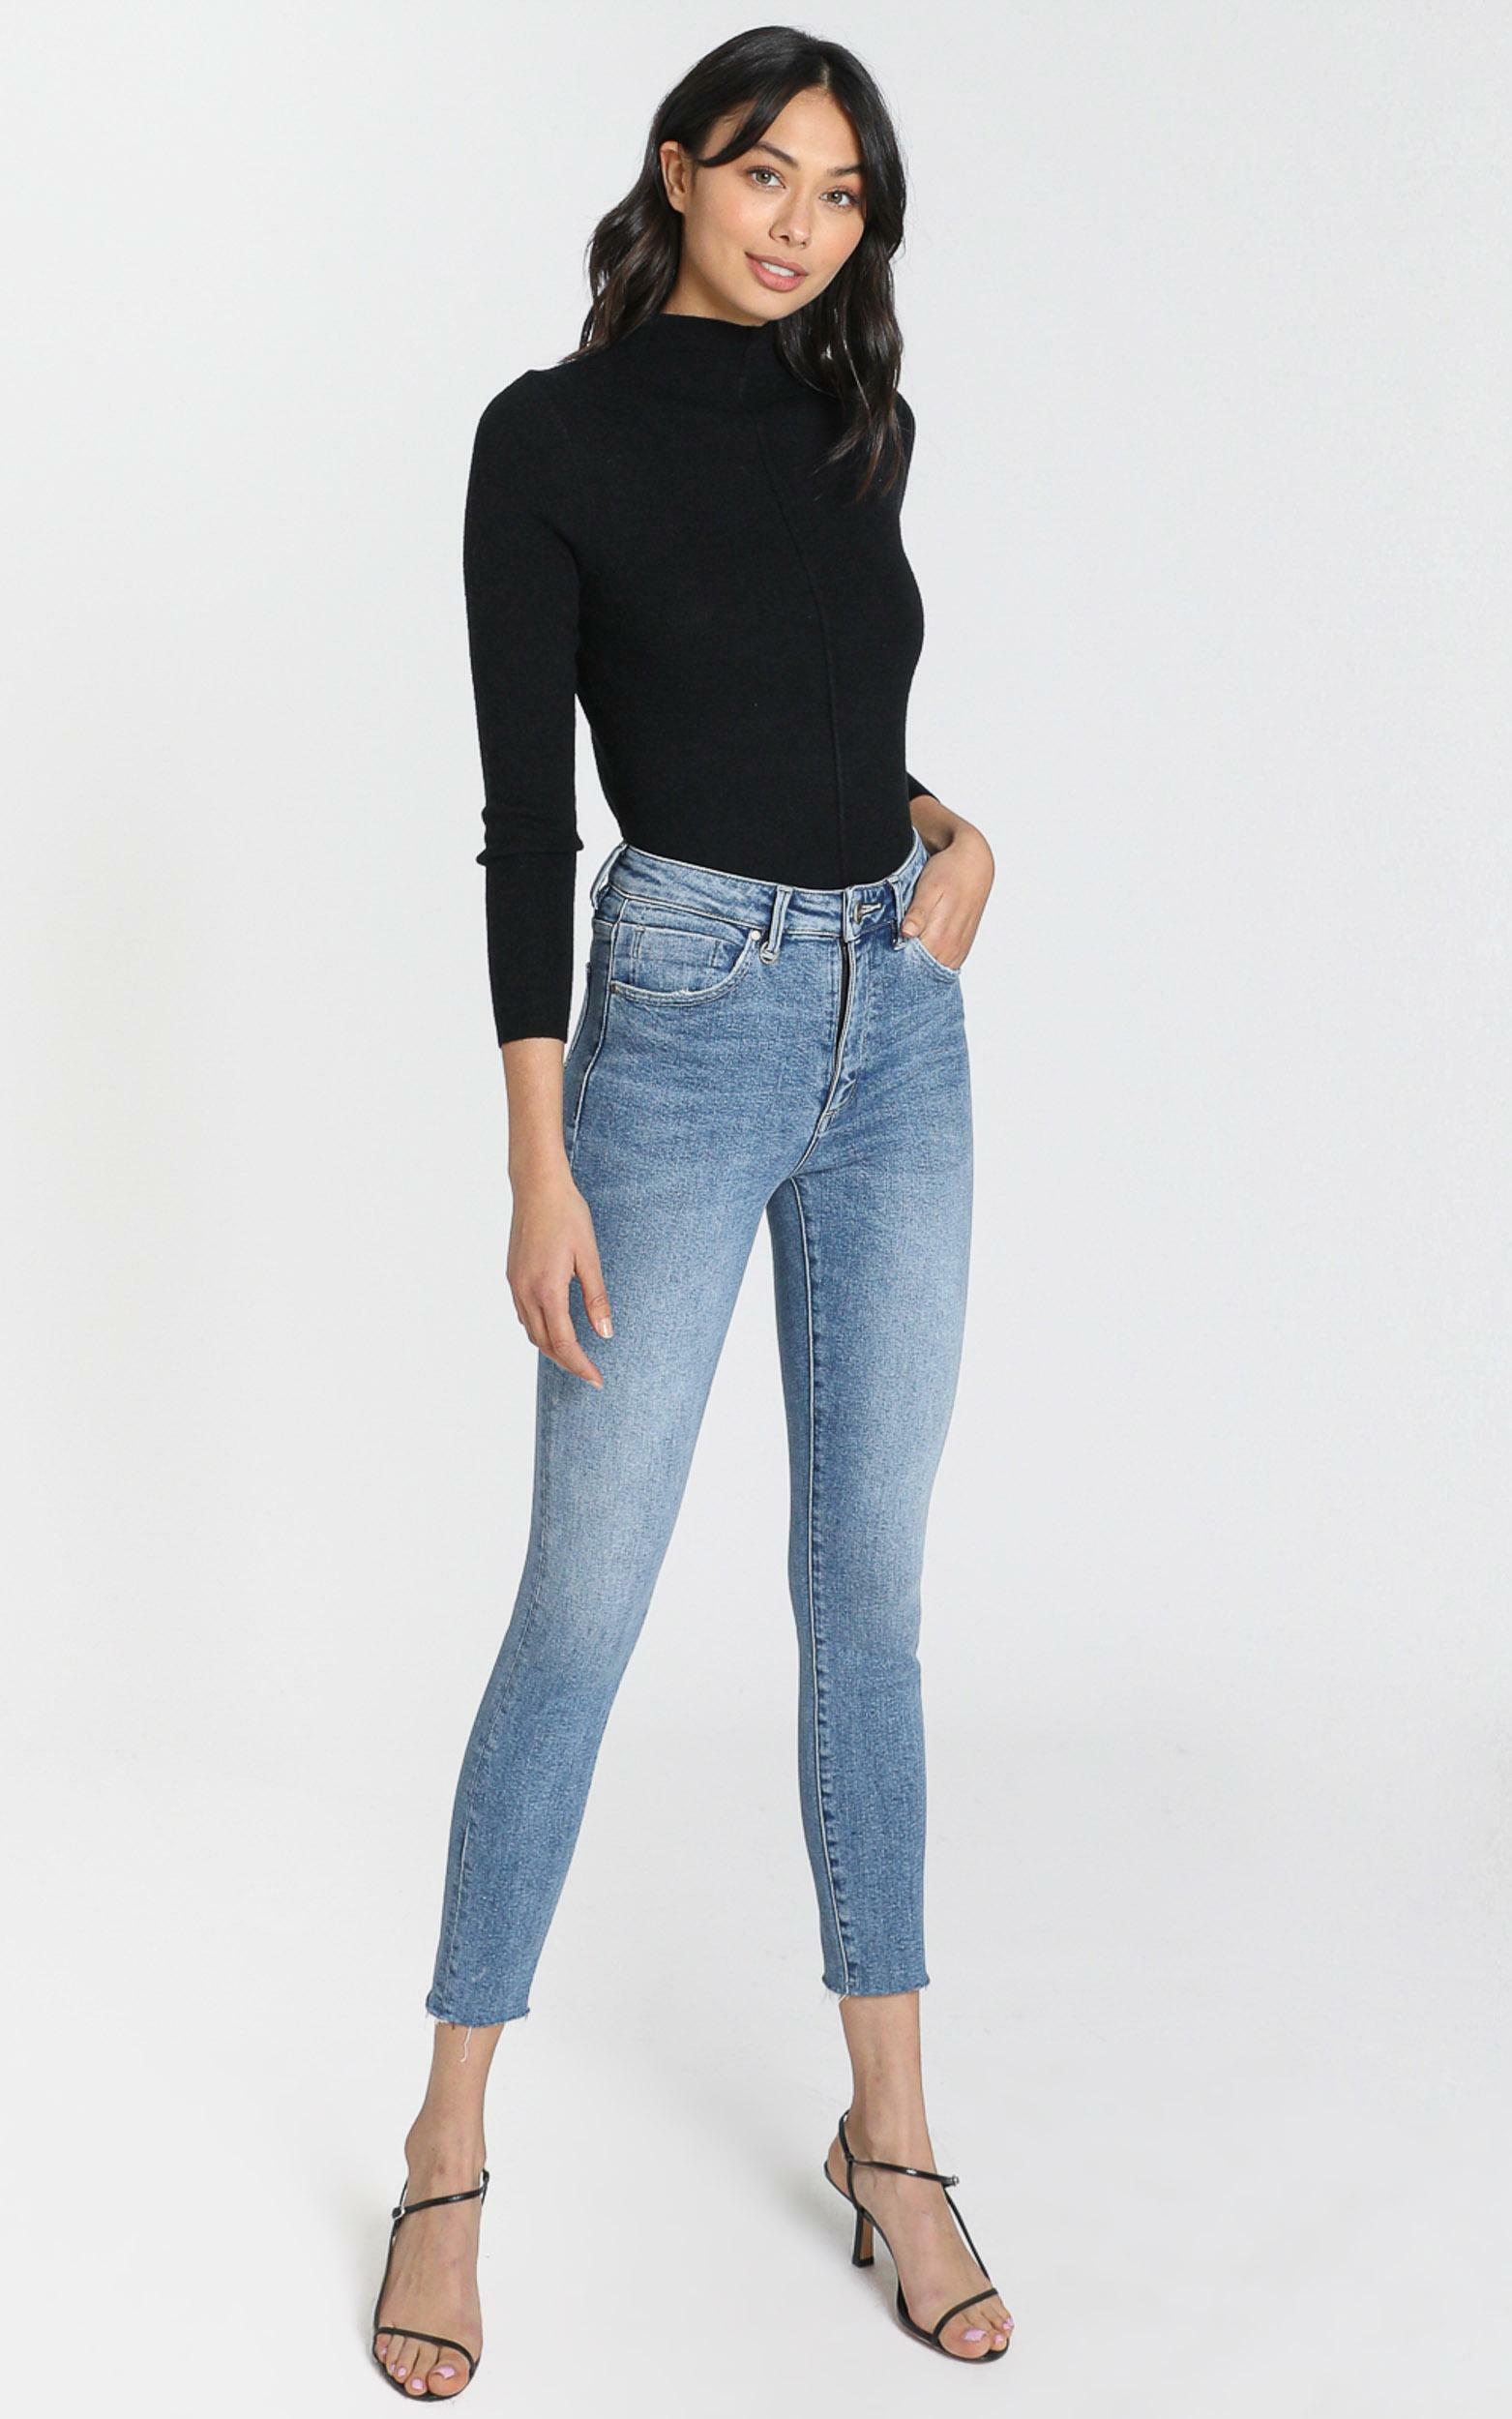 Neuw - Marilyn Skinny Jeans in Broken Blue - 06, BLU1, hi-res image number null